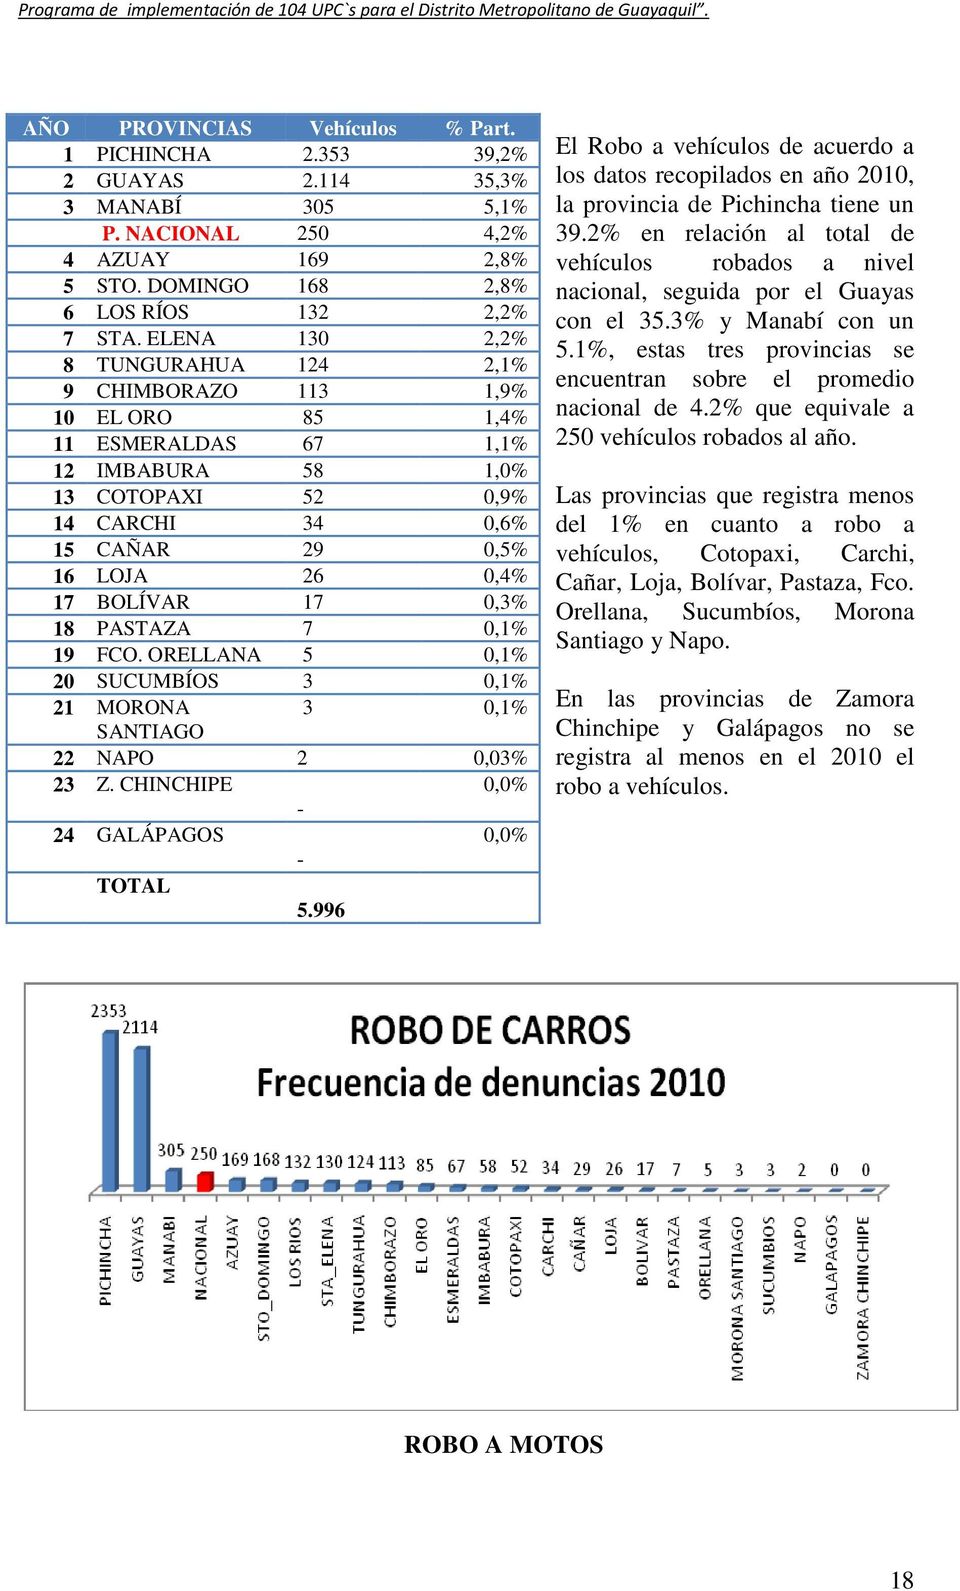 BOLÍVAR 17 0,3% 18 PASTAZA 7 0,1% 19 FCO. ORELLANA 5 0,1% 20 SUCUMBÍOS 3 0,1% 21 MORONA 3 0,1% SANTIAGO 22 NAPO 2 0,03% 23 Z. CHINCHIPE 0,0% - 24 GALÁPAGOS 0,0% - TOTAL 5.